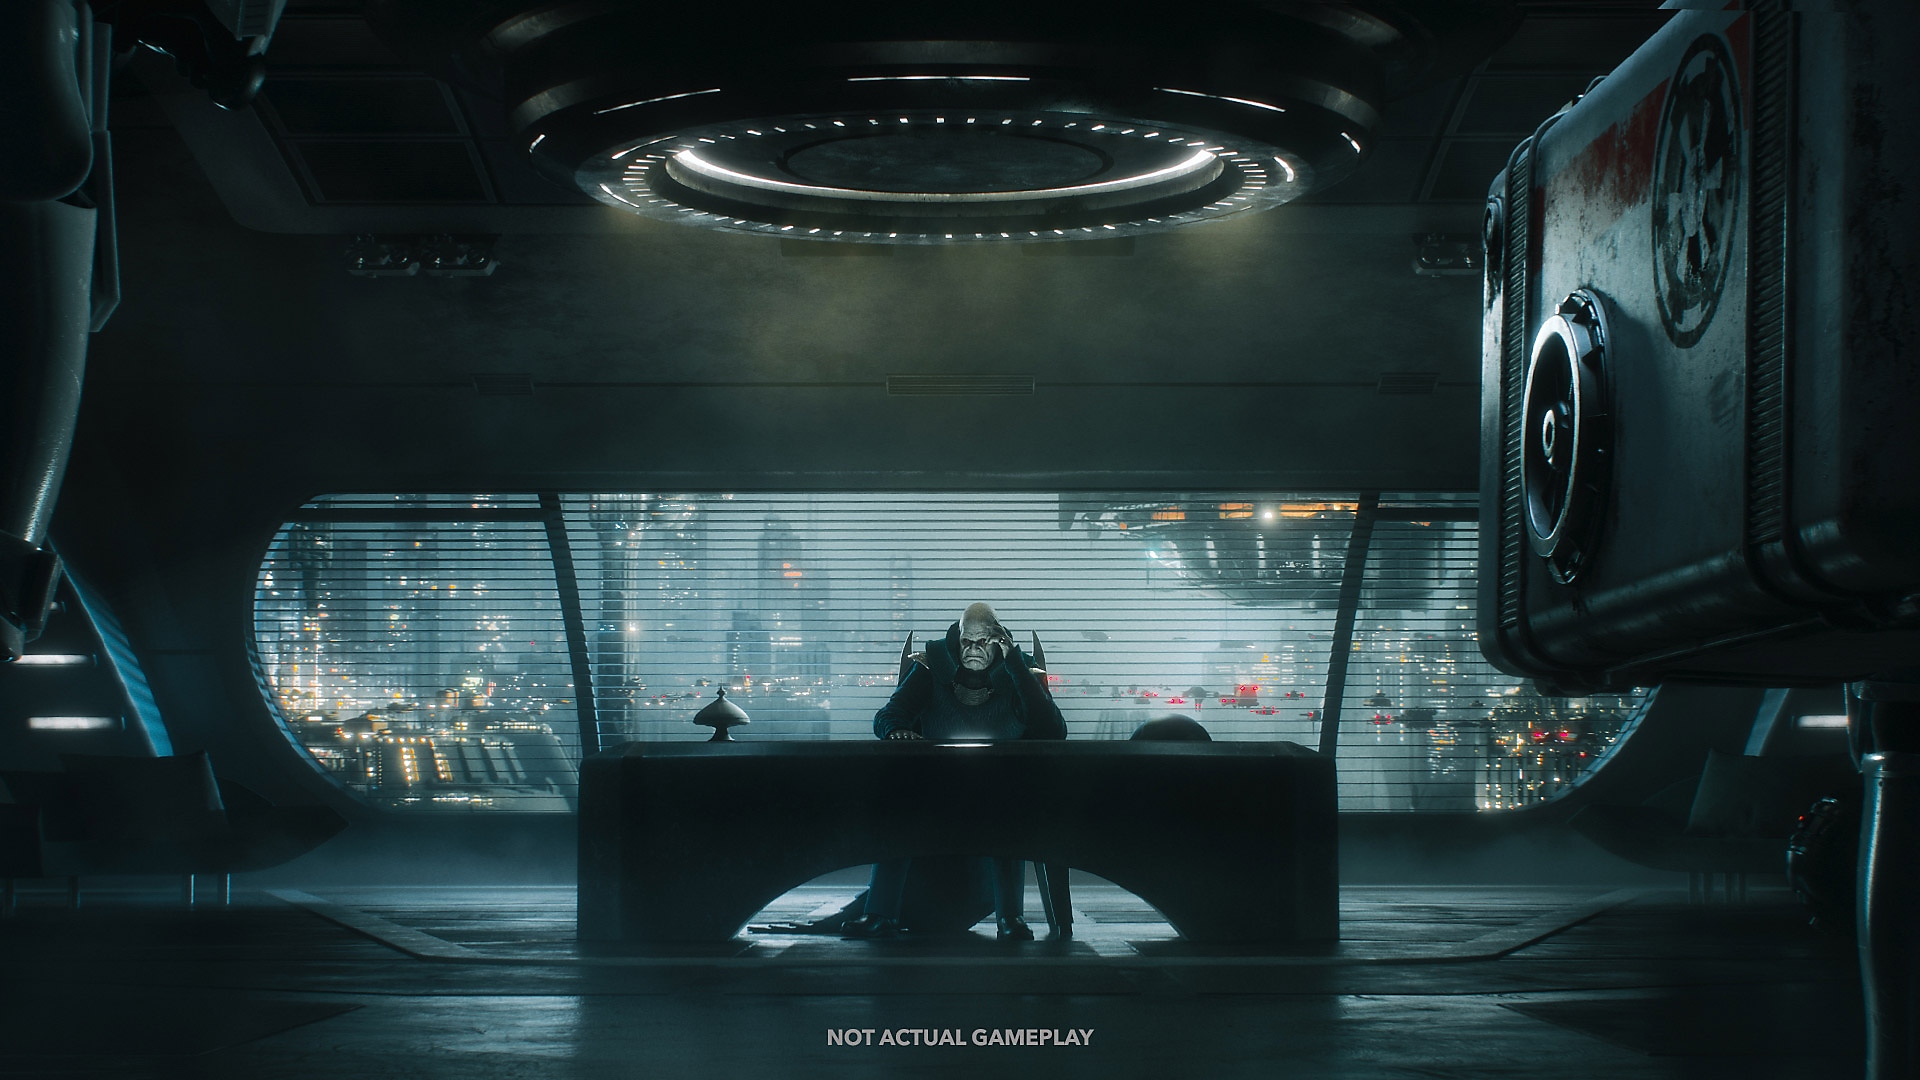 STAR WARS Jedi: Survivor – snímek obrazovky s postavou sedící u stolu před velkým oknem